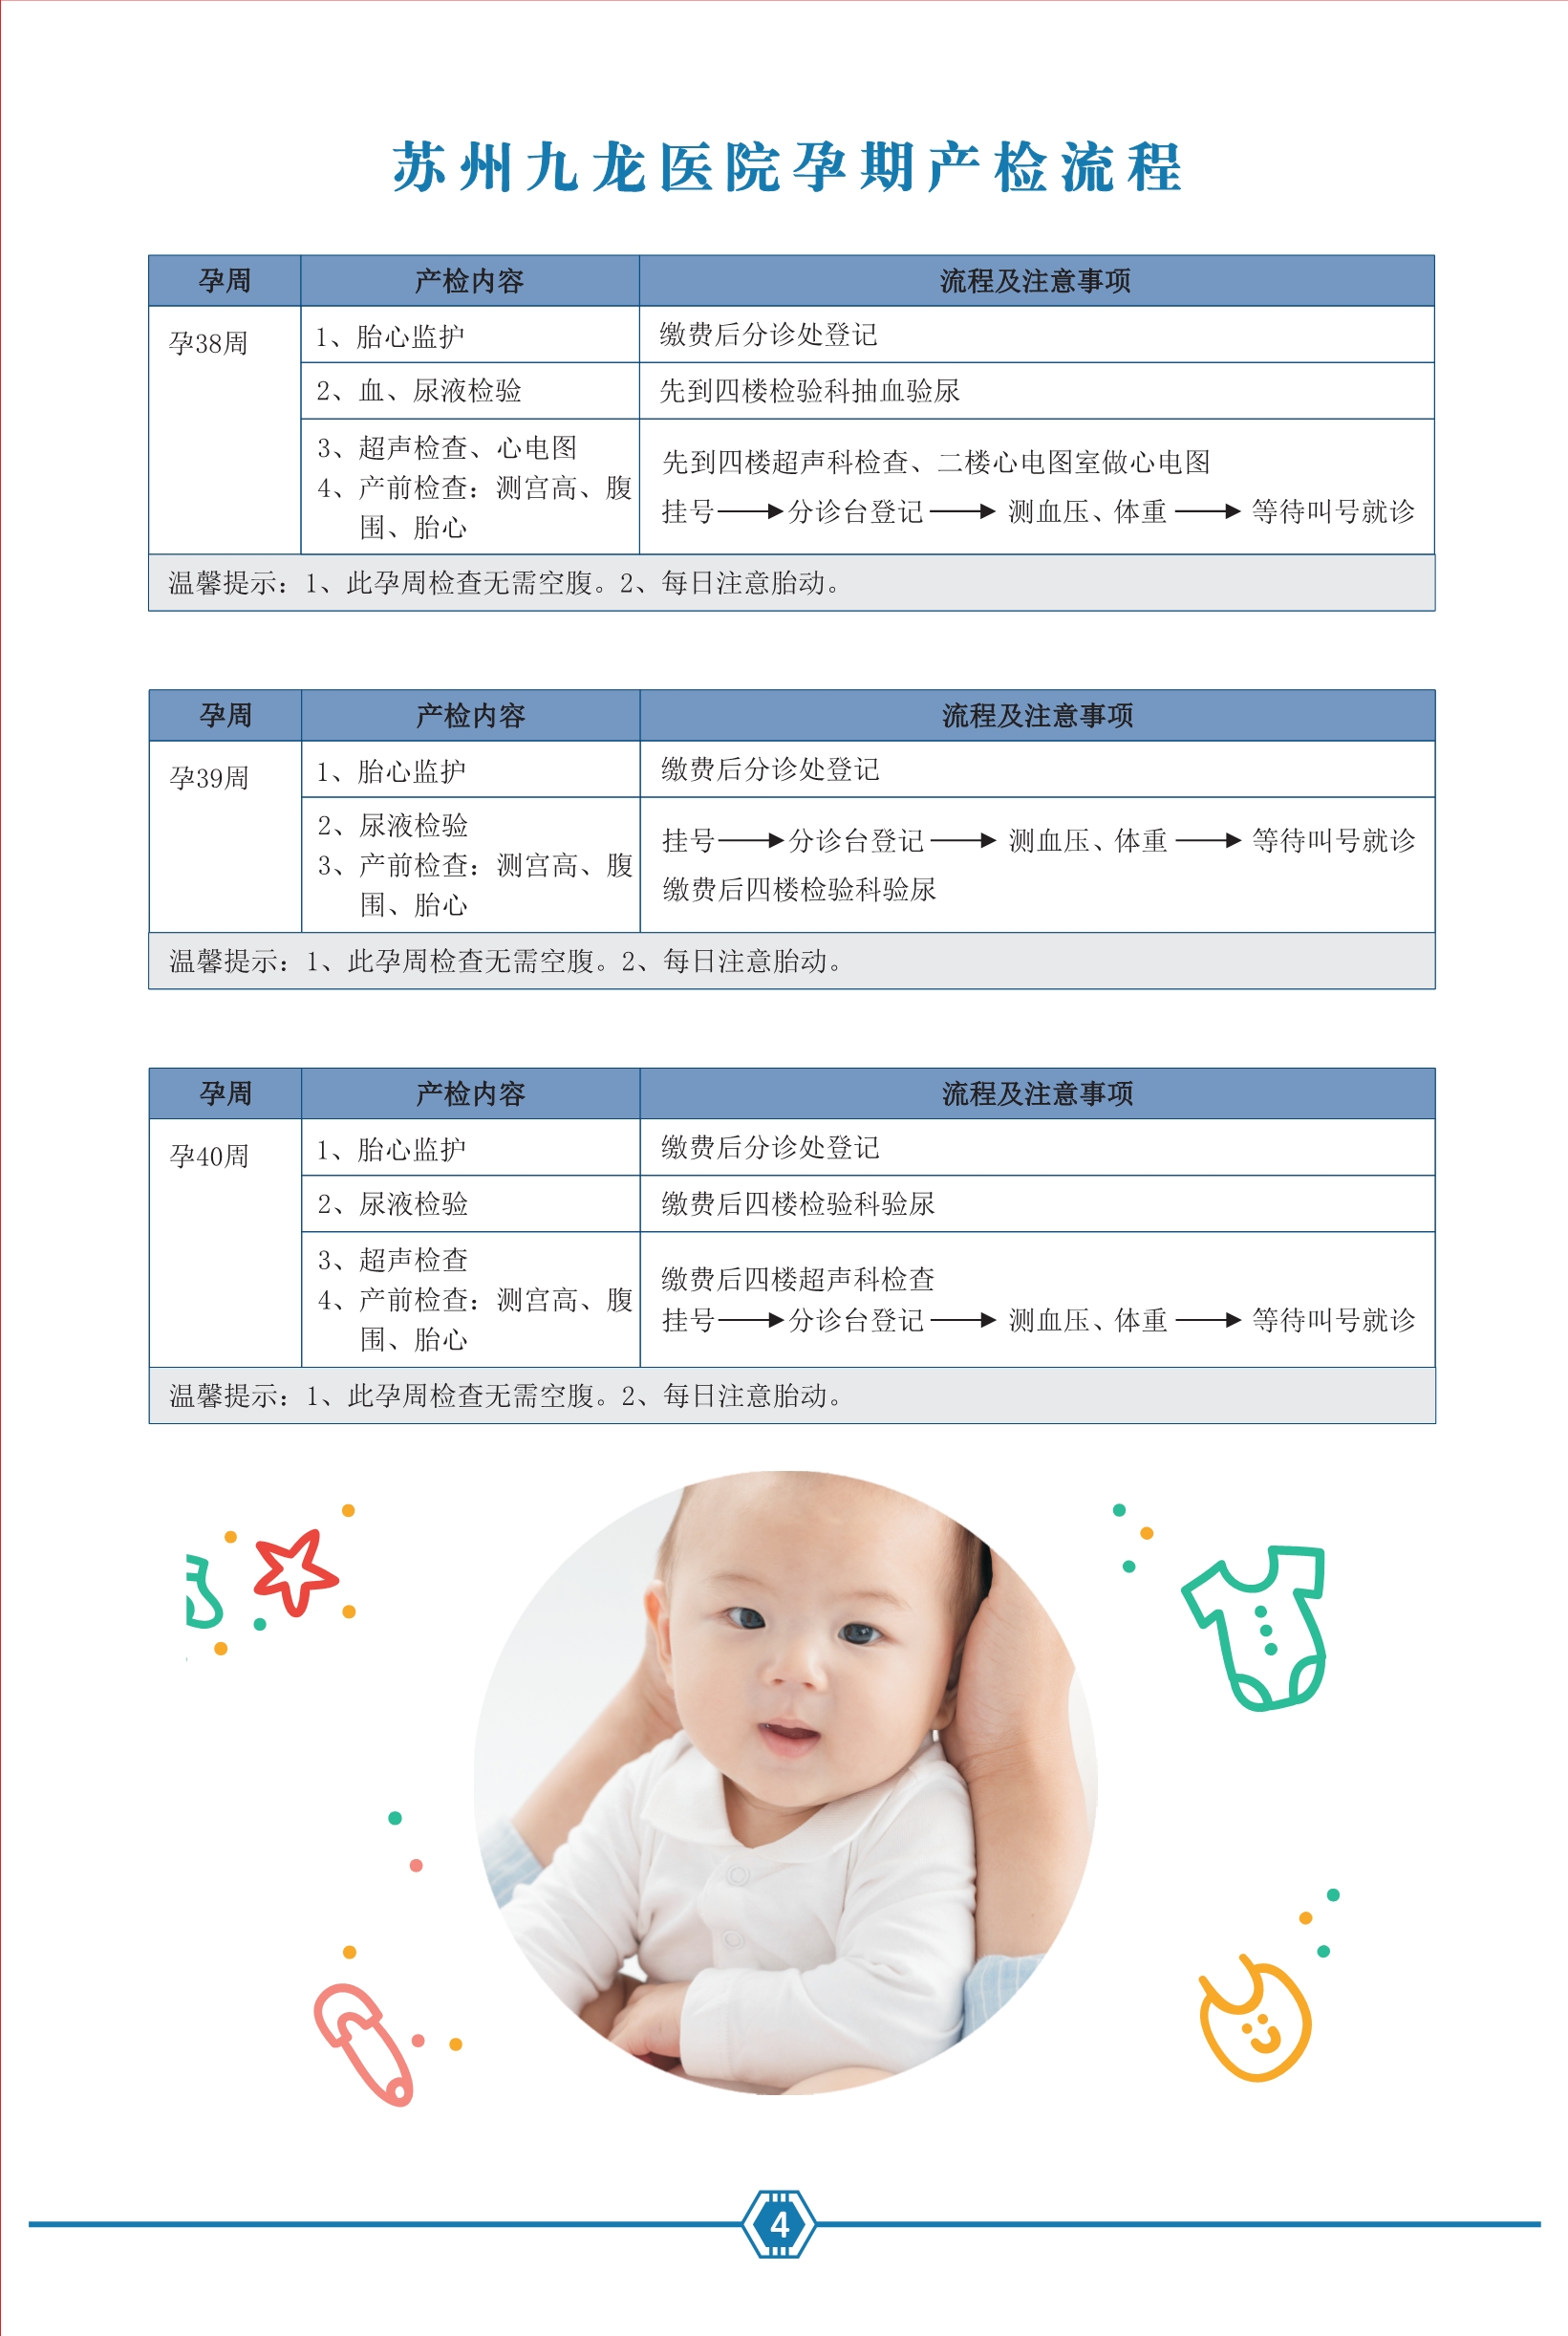 九龙医院产检专用手册2021.06.29--去框_5.jpg